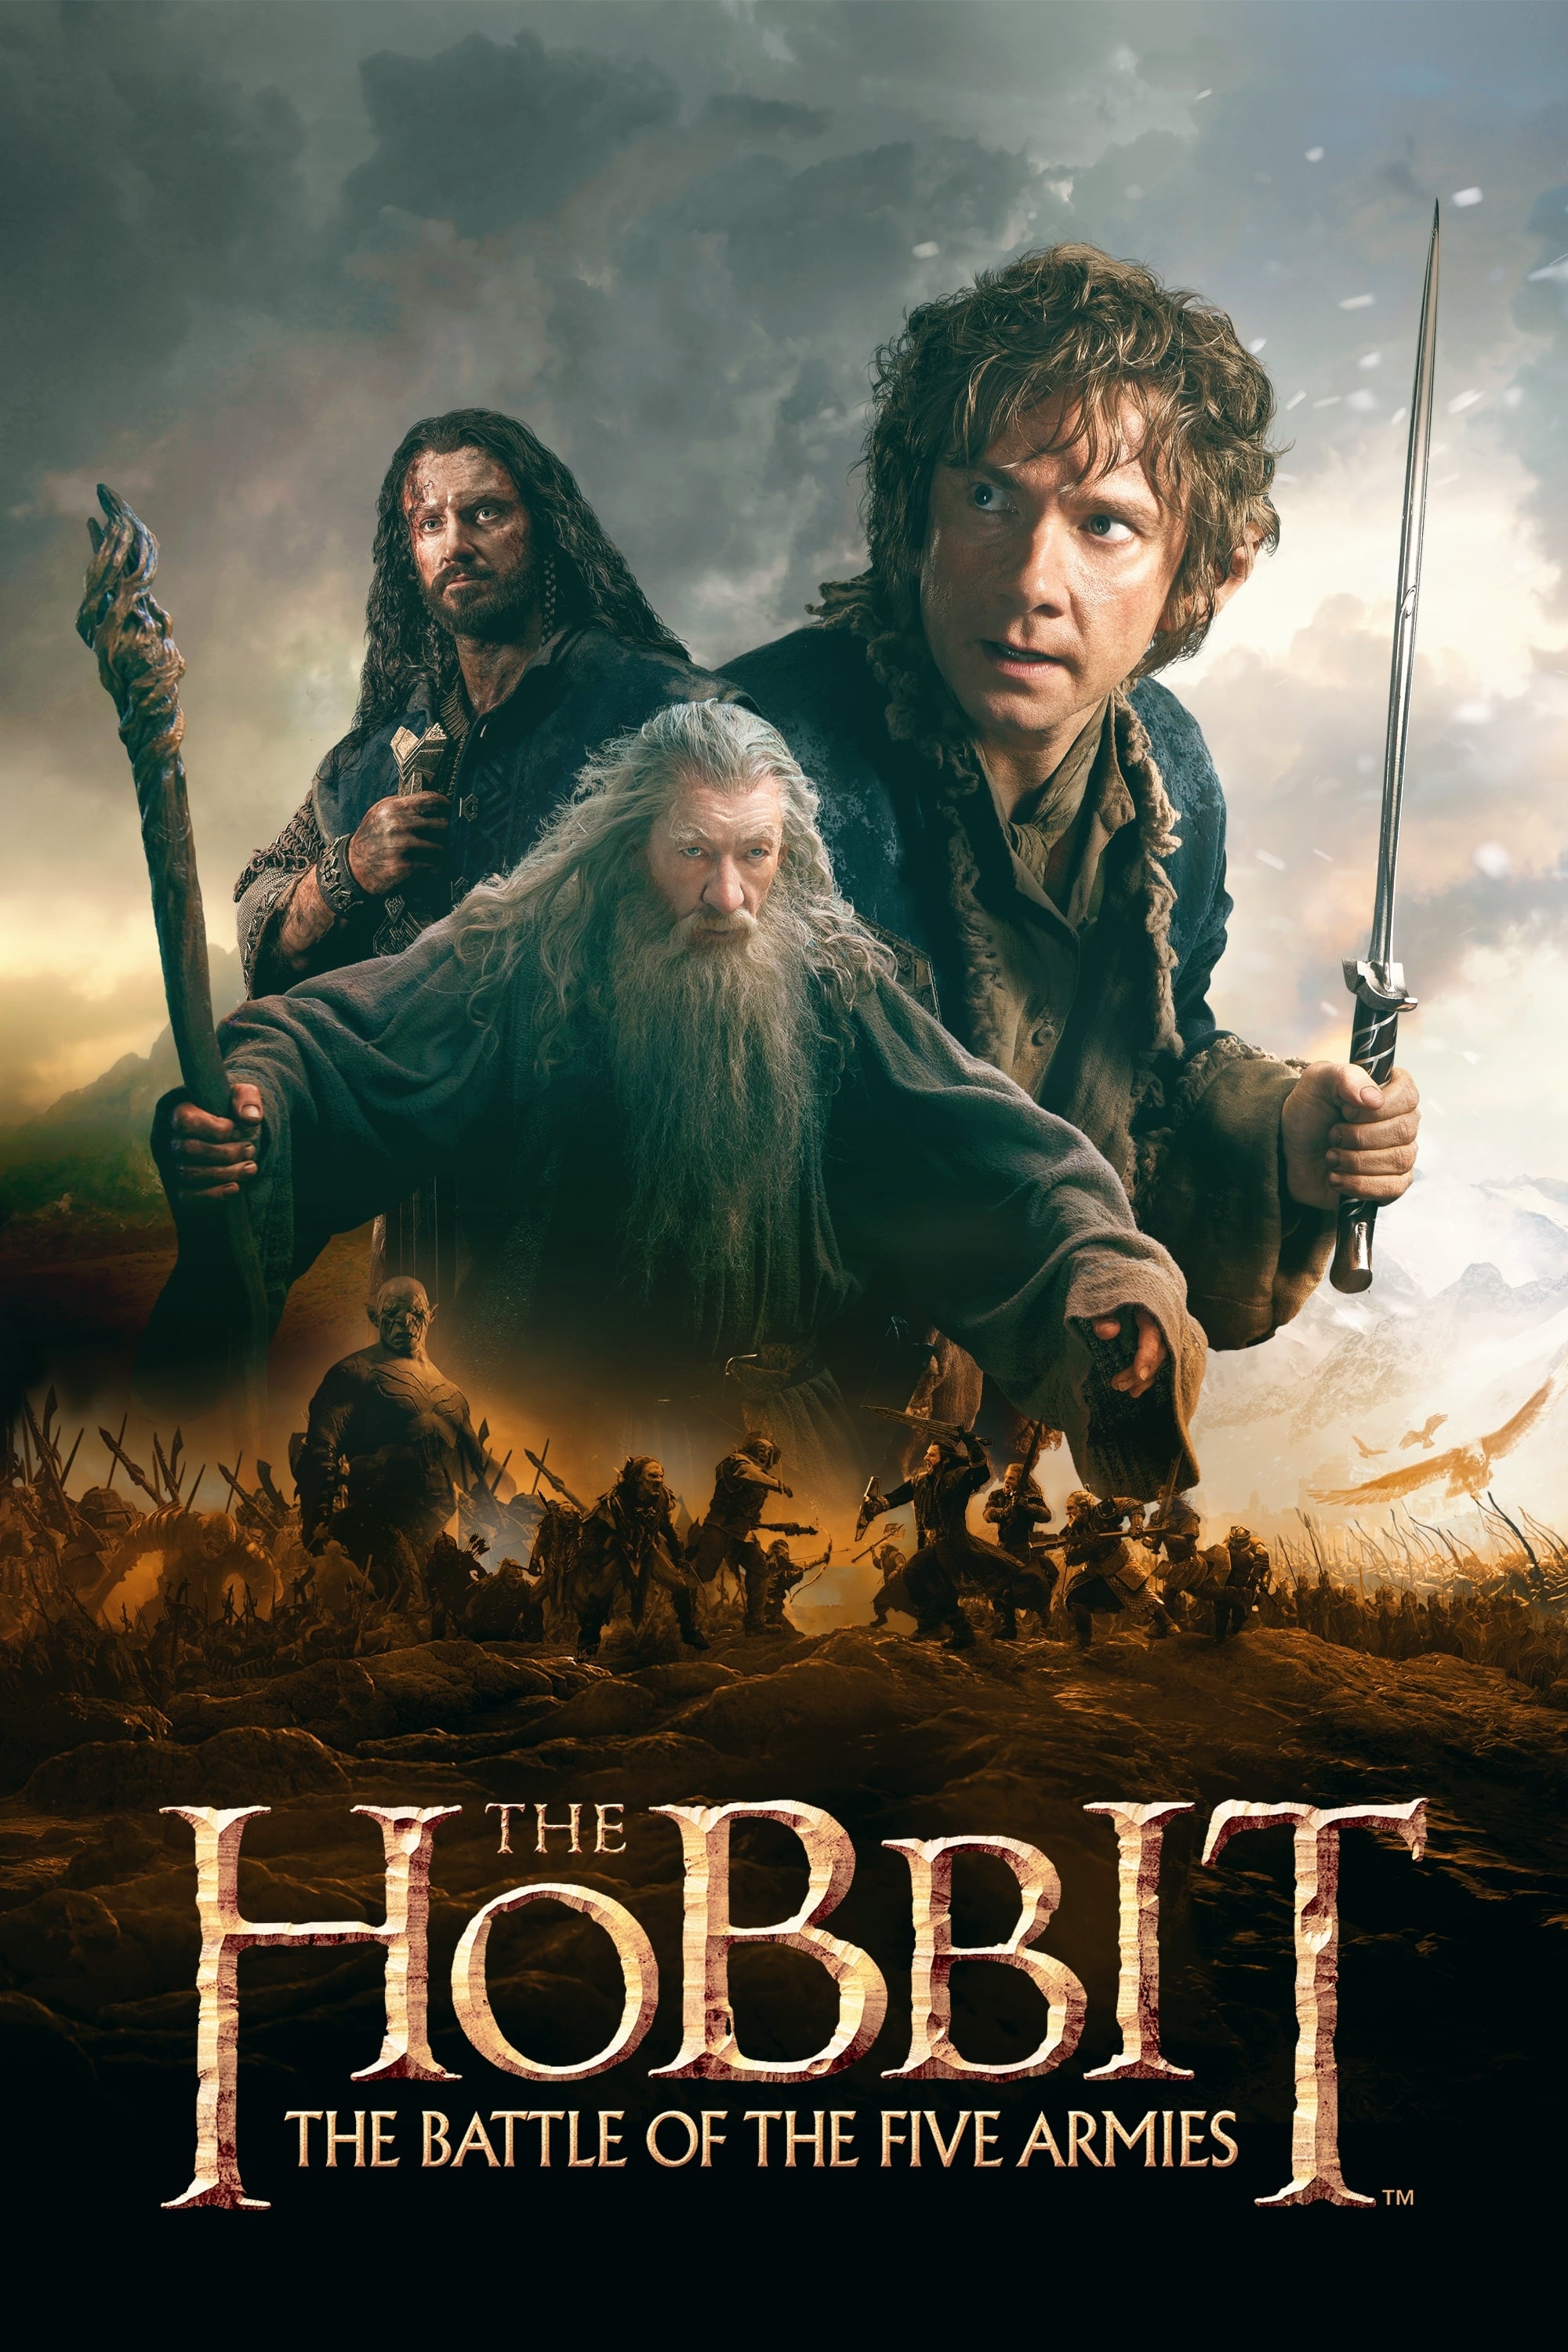 Der Hobbit - Die Schlacht der fünf Heere (2014)